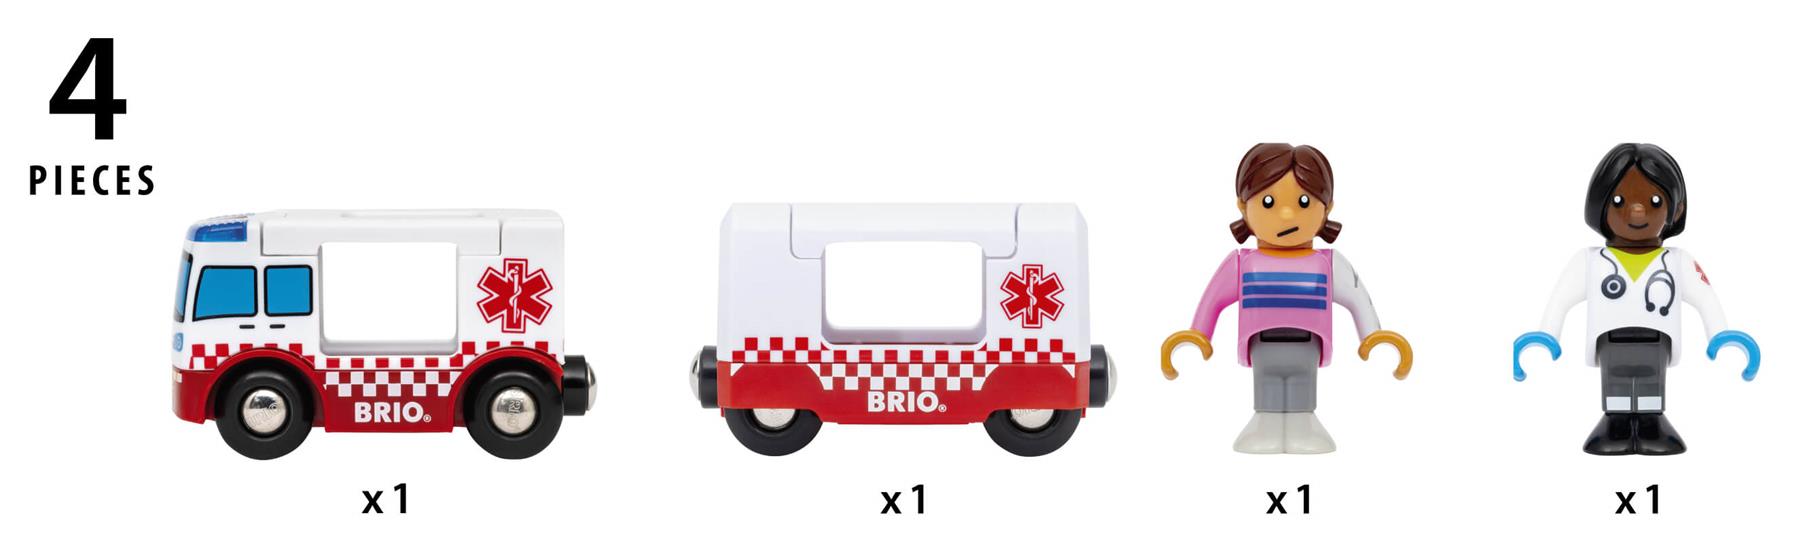 Brio World 36035 Rescue Ambulance